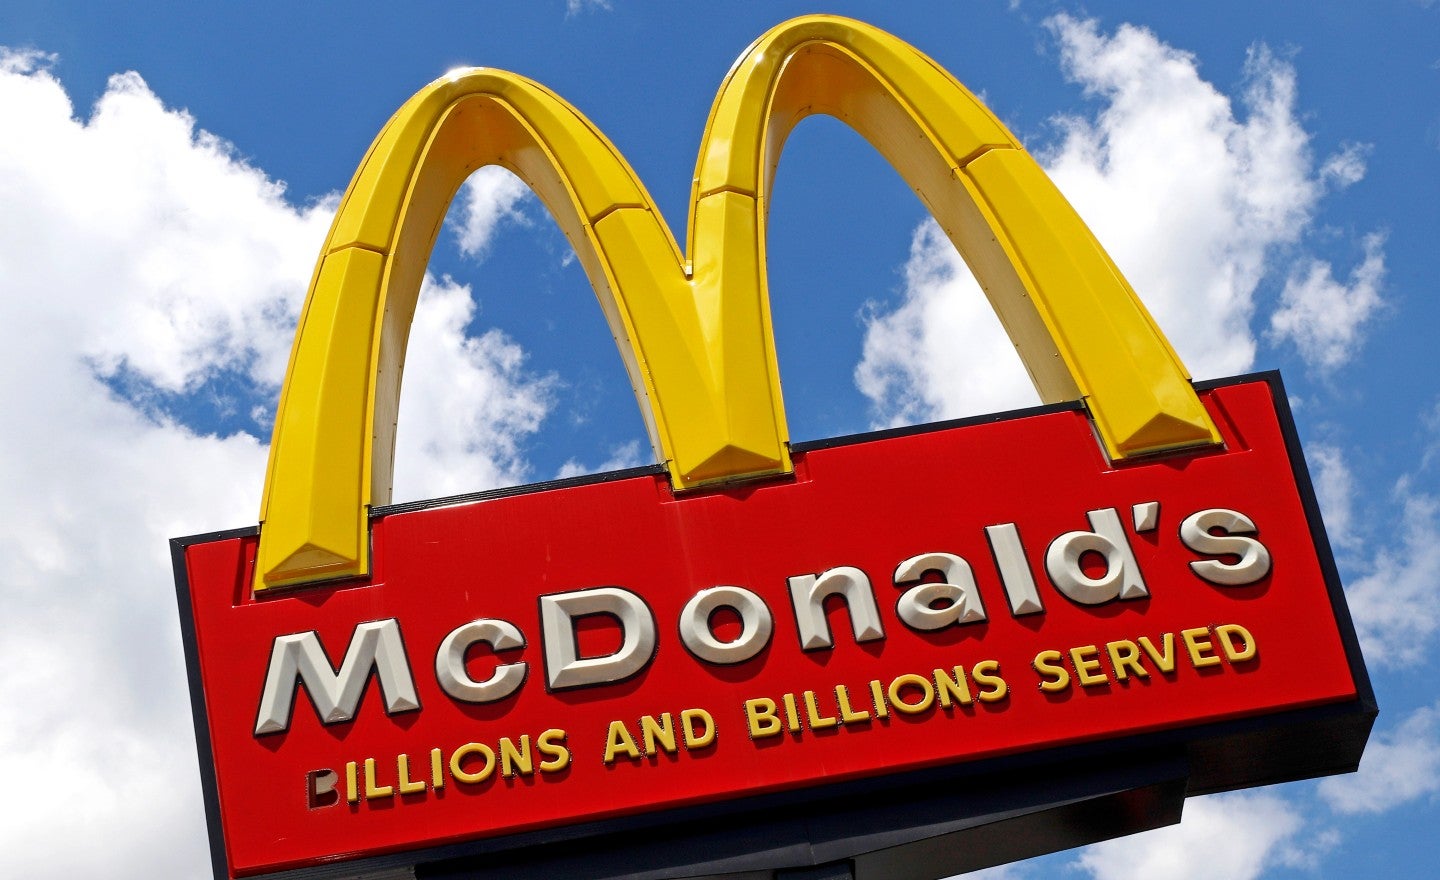 I produttori di riparatori di macchine per gelato hanno citato in giudizio McDonald's in una causa da 900 milioni di dollari

